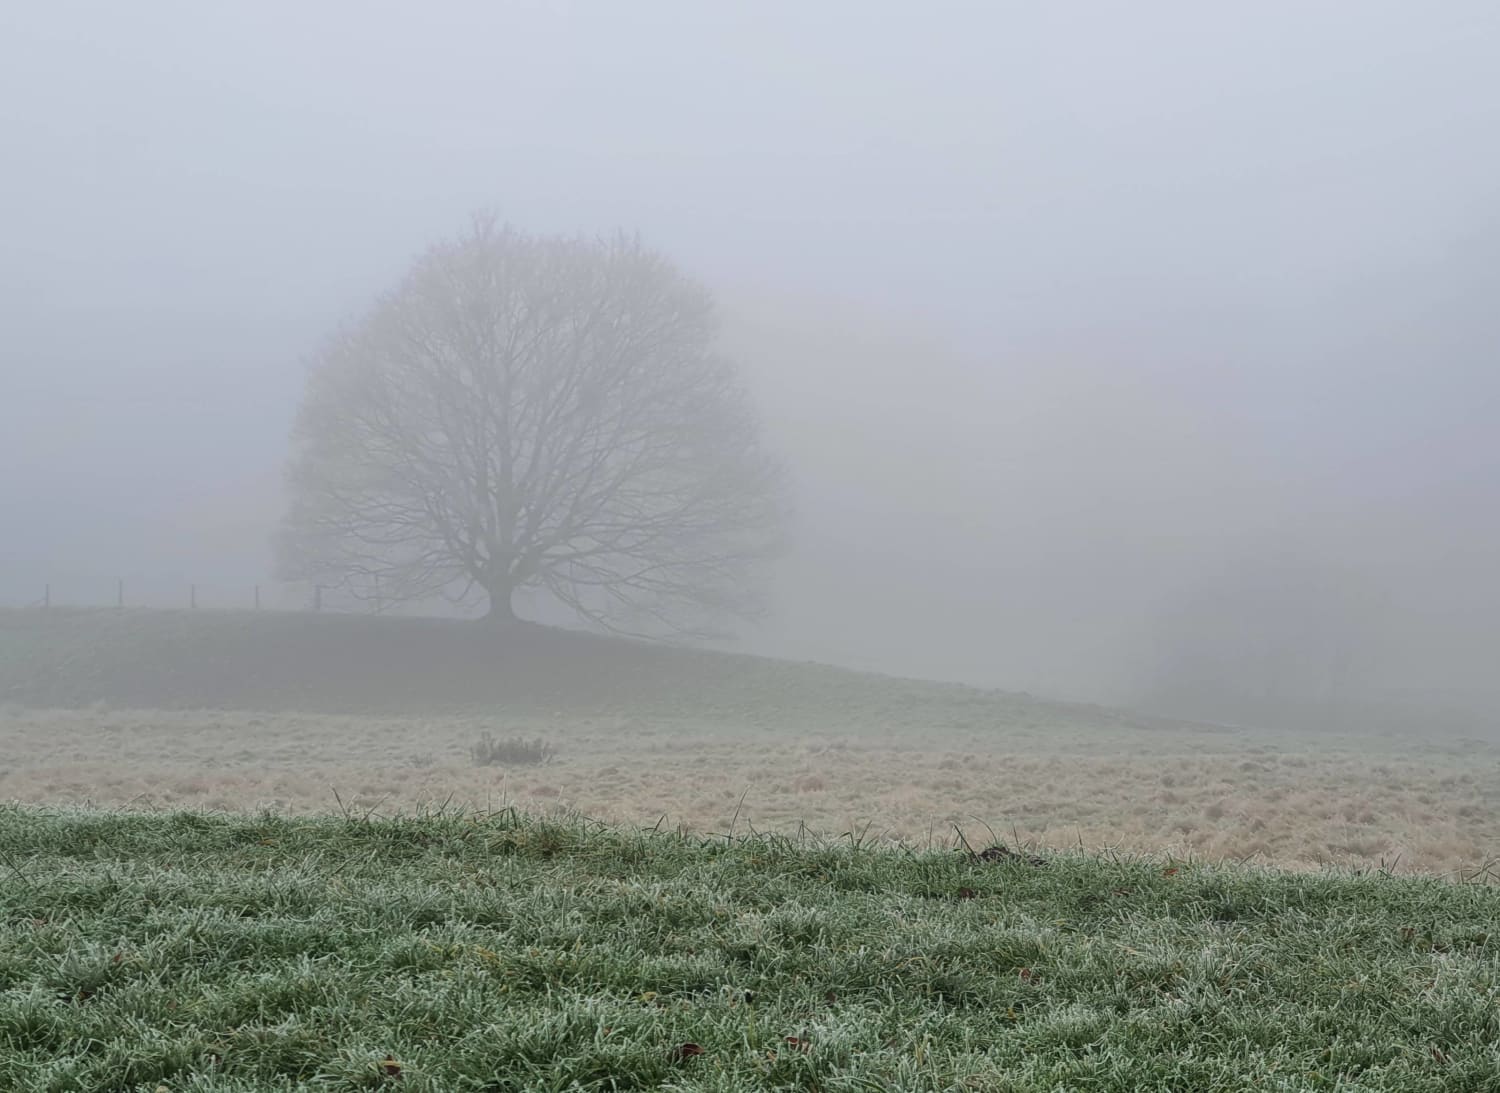 My favorite tree shrouded in fog. Germany, North Rhine-Westphalia